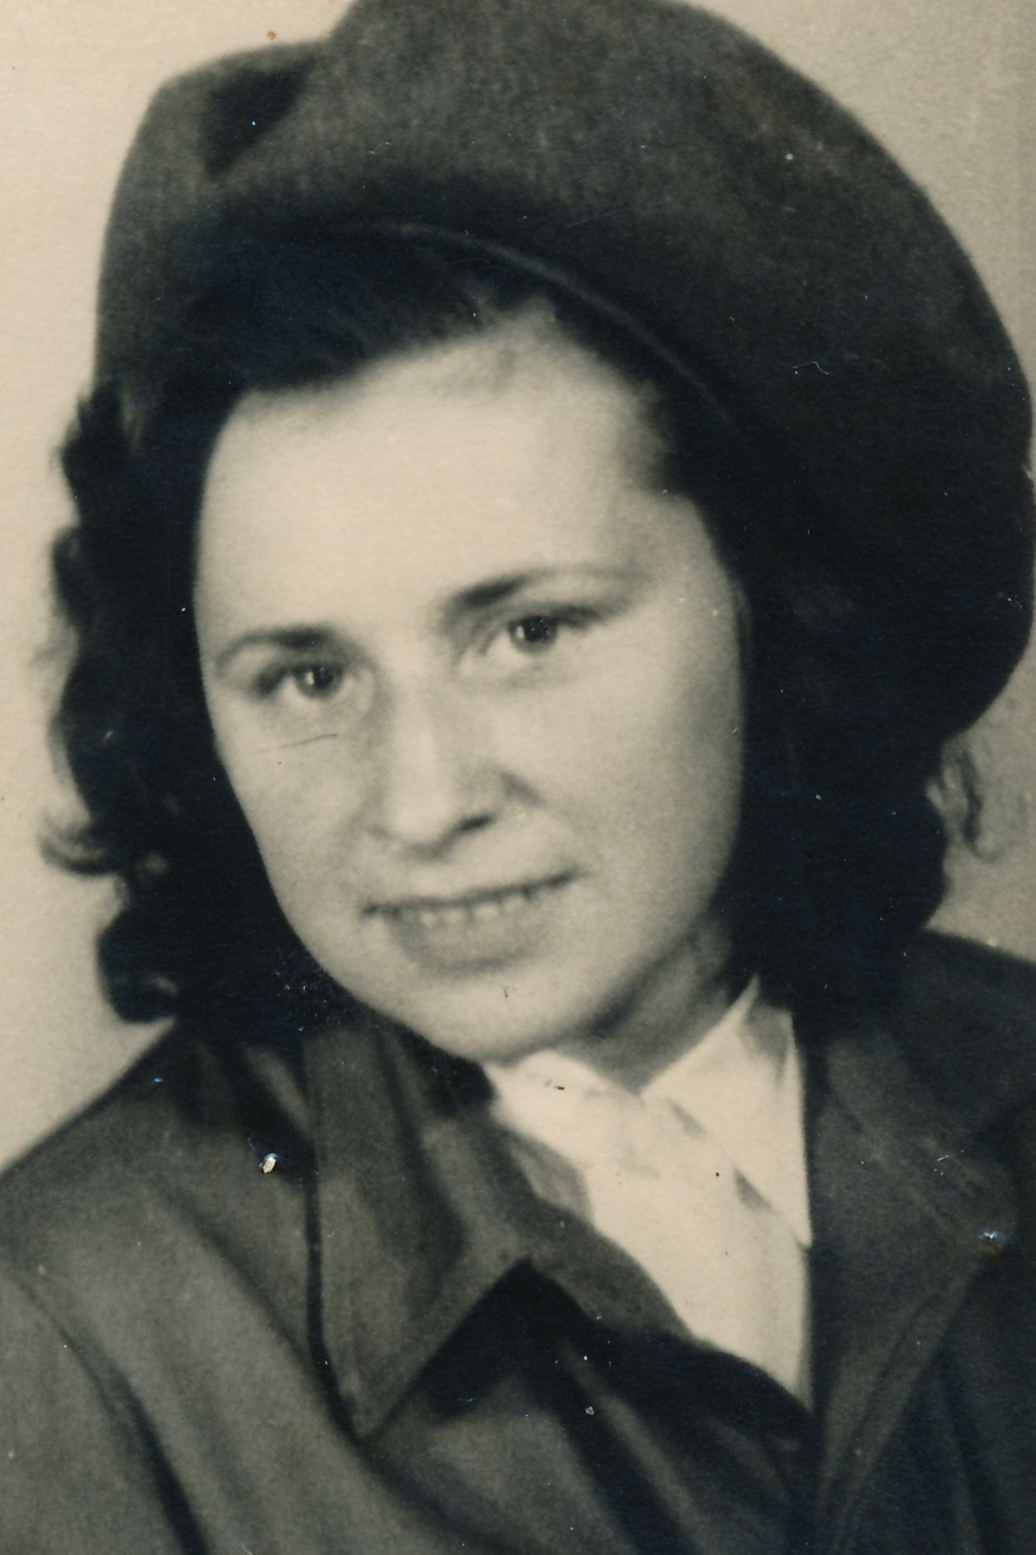 witness in 1945 